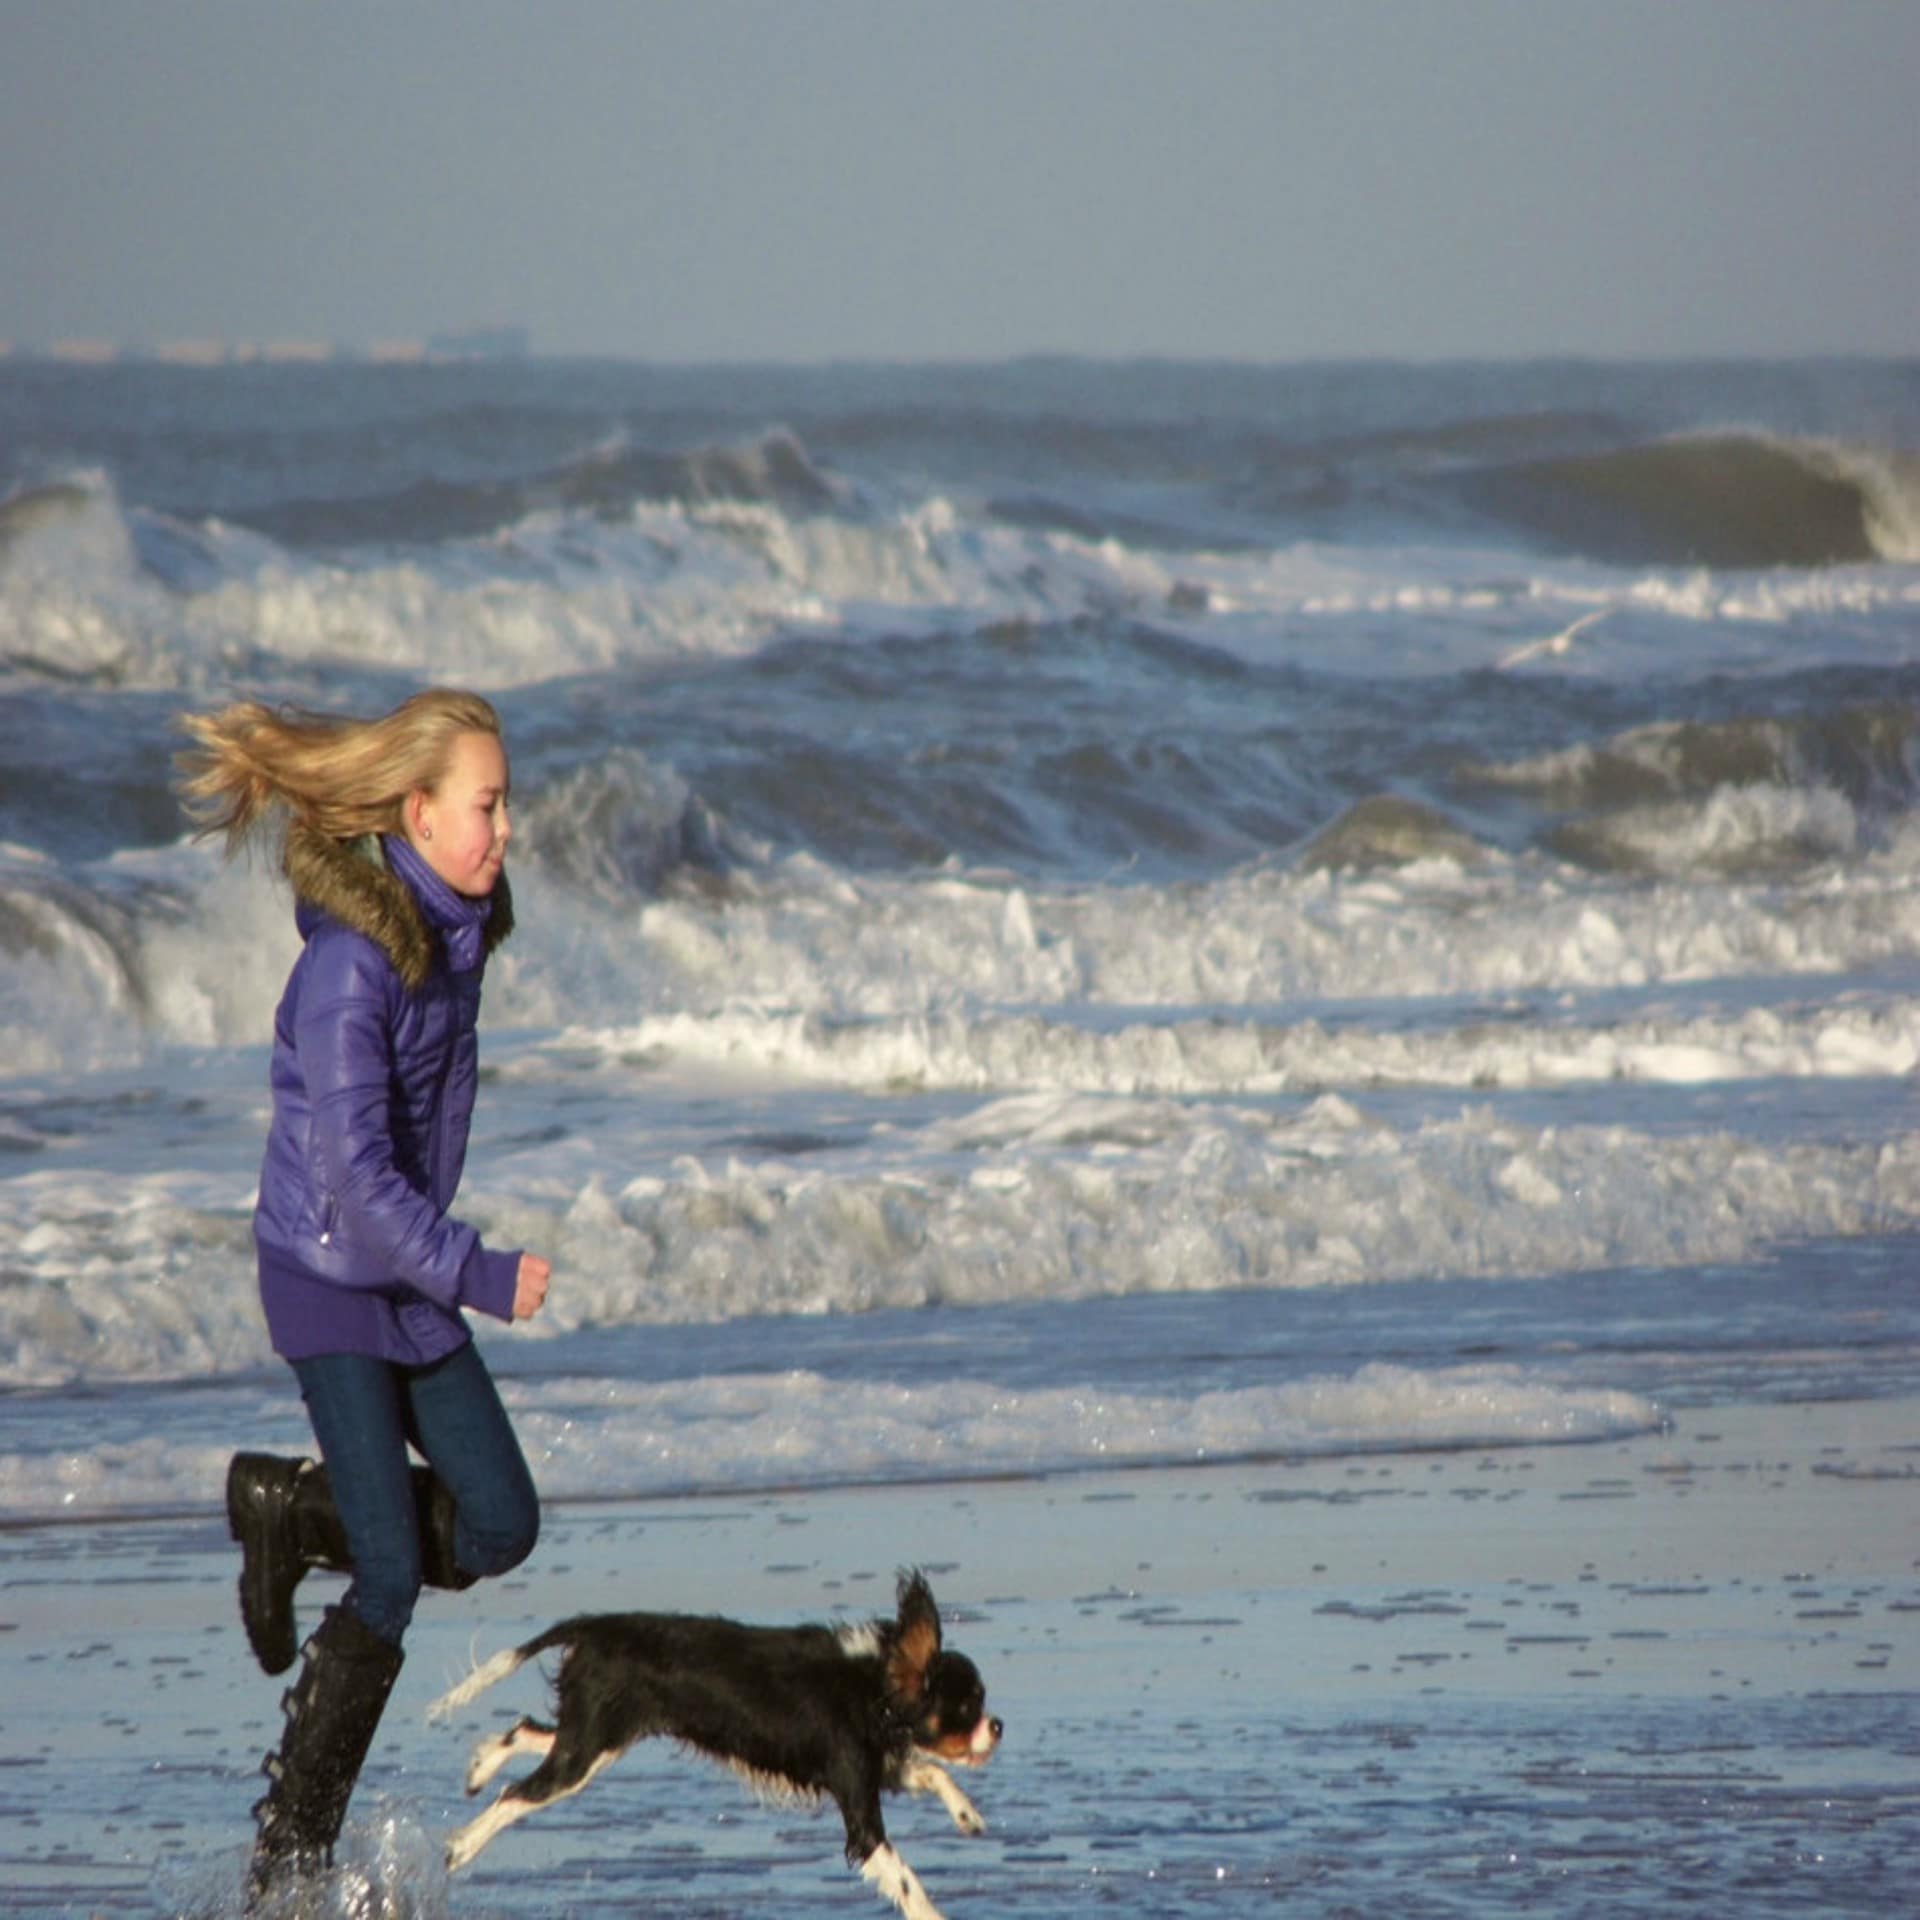 Ein blondes Mädchen mit lila Jacke rennt mit einem kleinen Hund am Wasser entlang. 